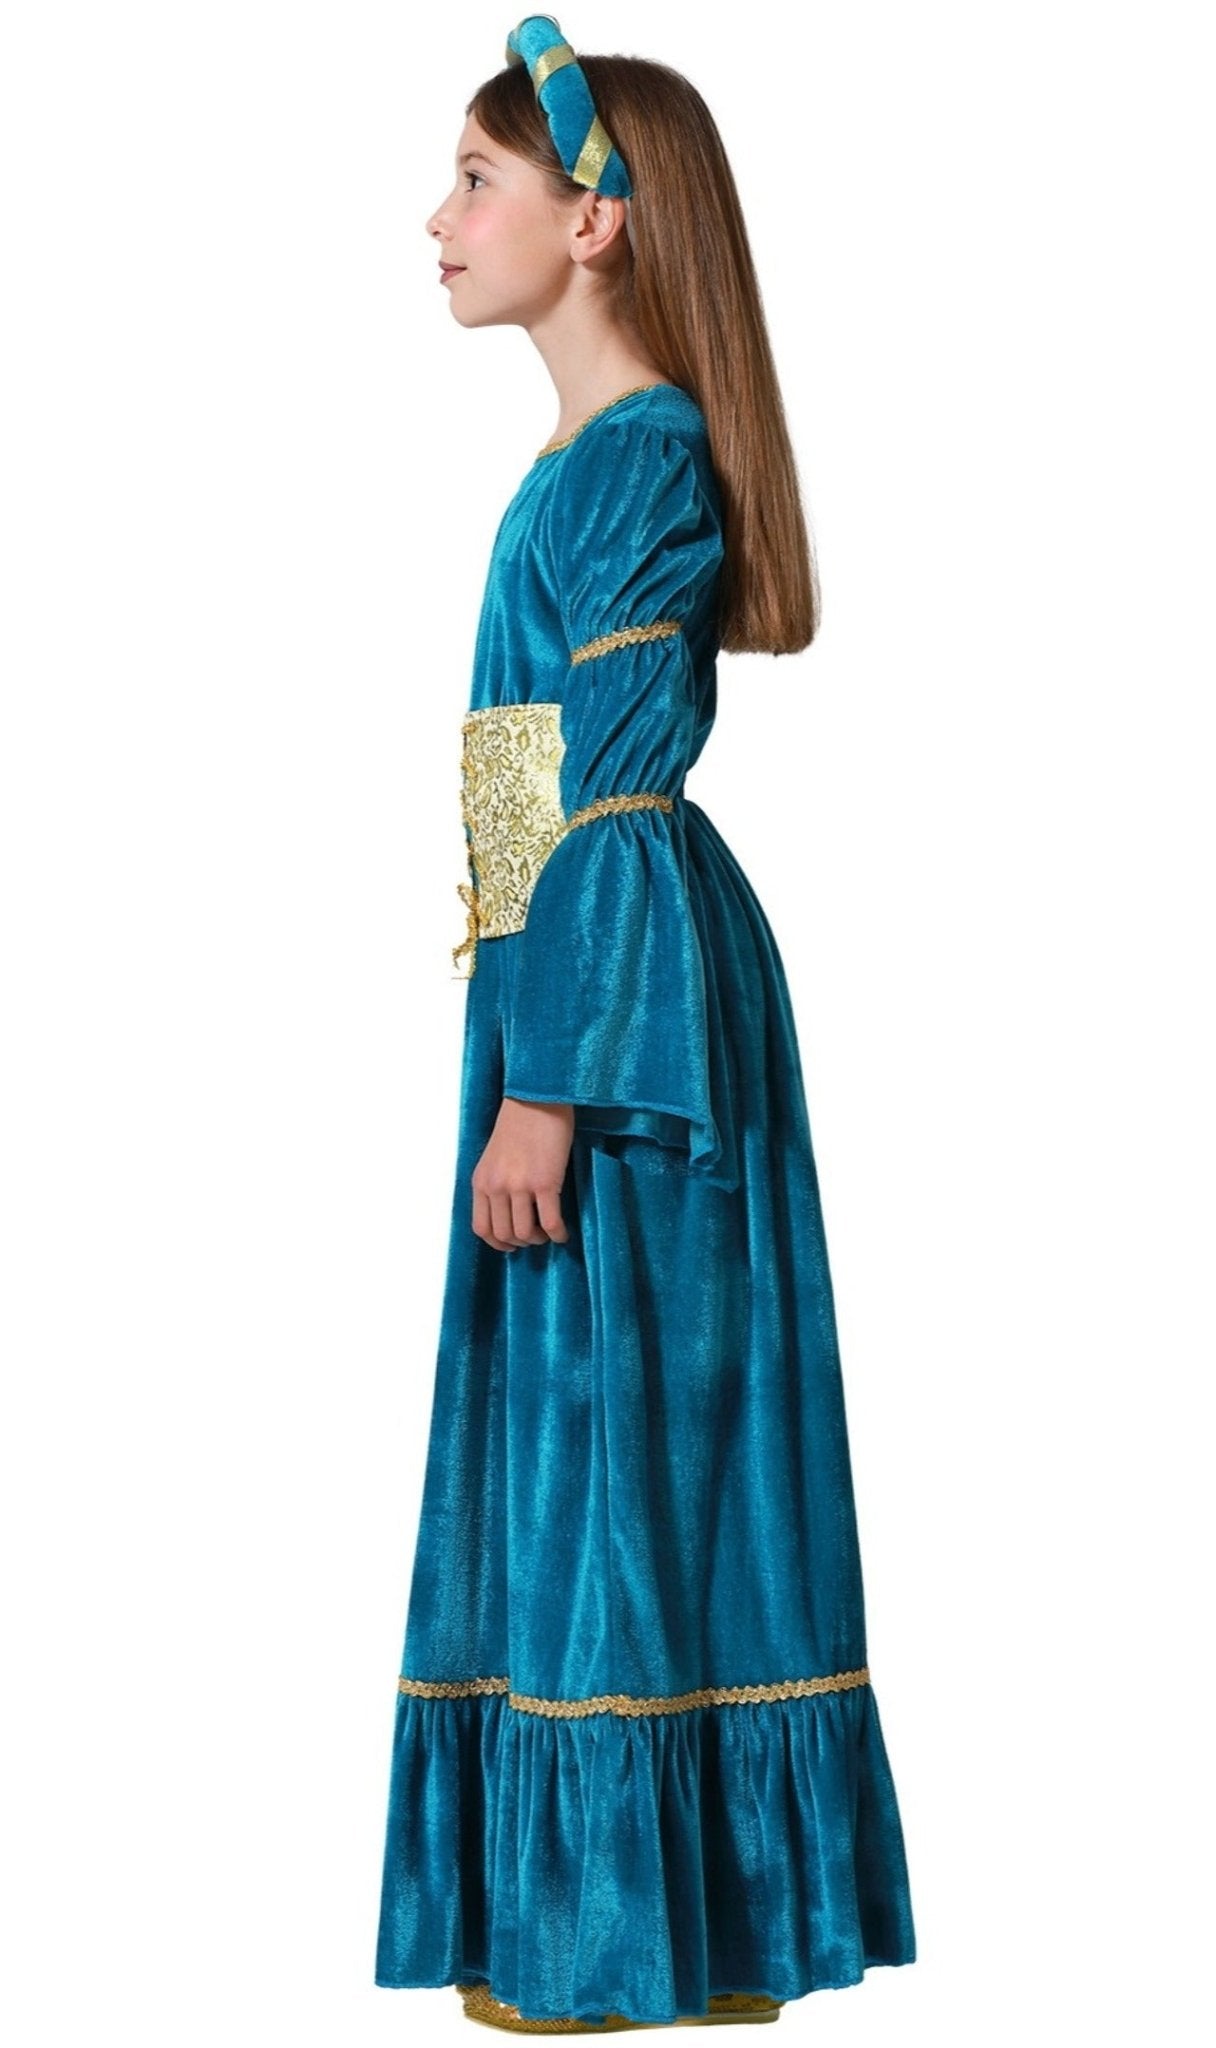 Disfraz de Princesa Medieval Mérida para niña I Don Disfraz